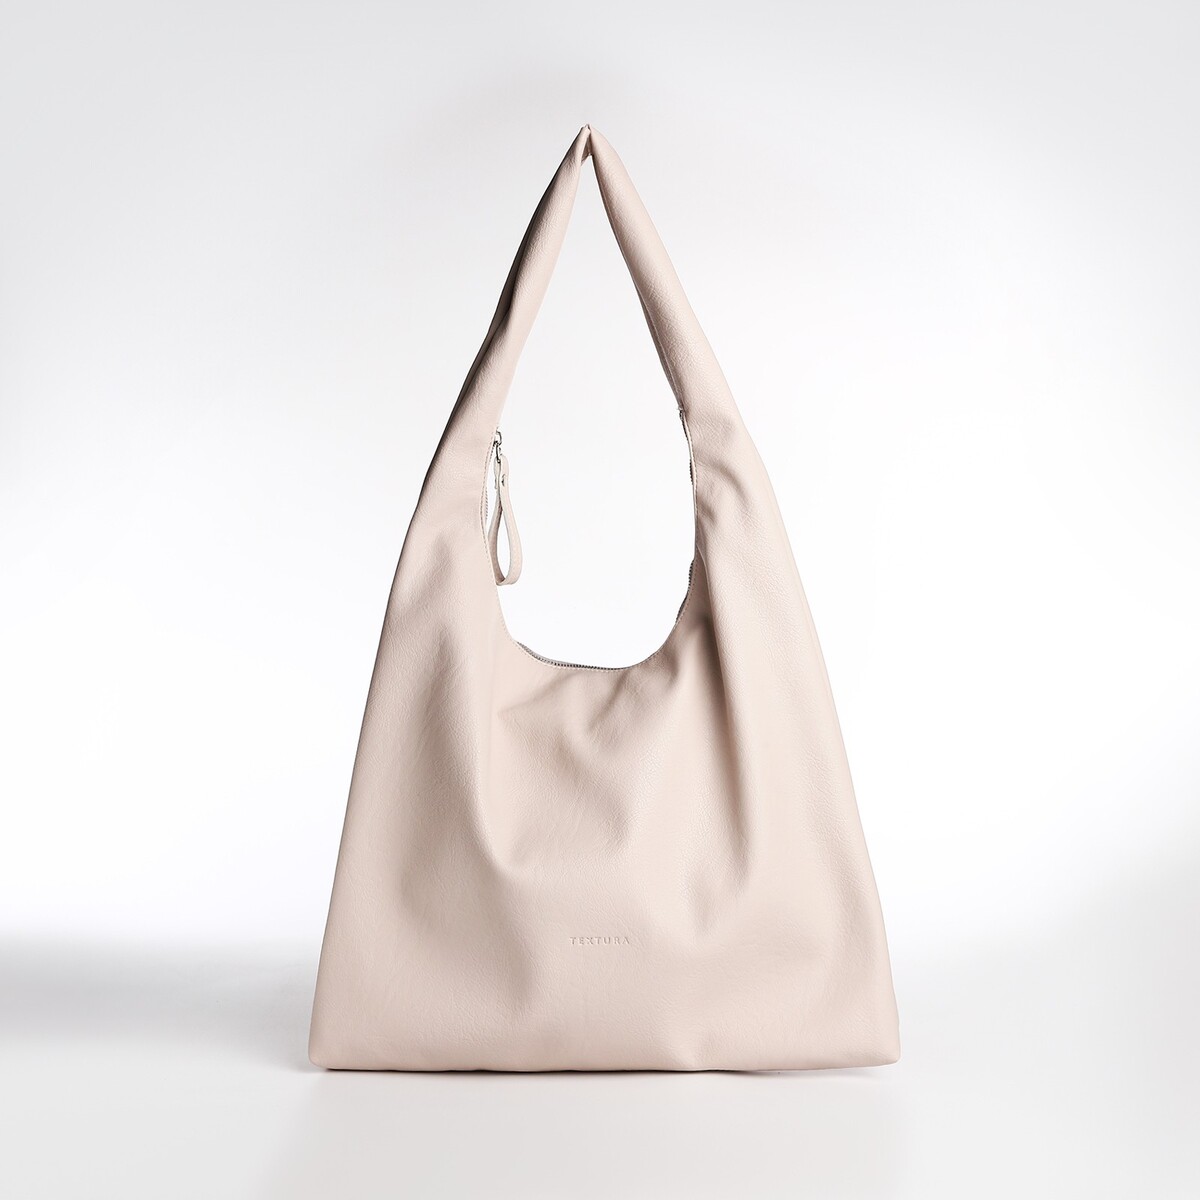 Сумка женская textura, мешок, большой размер, цвет бежевый сумка мешок для обуви playtoday текстильная размер 48 38 см